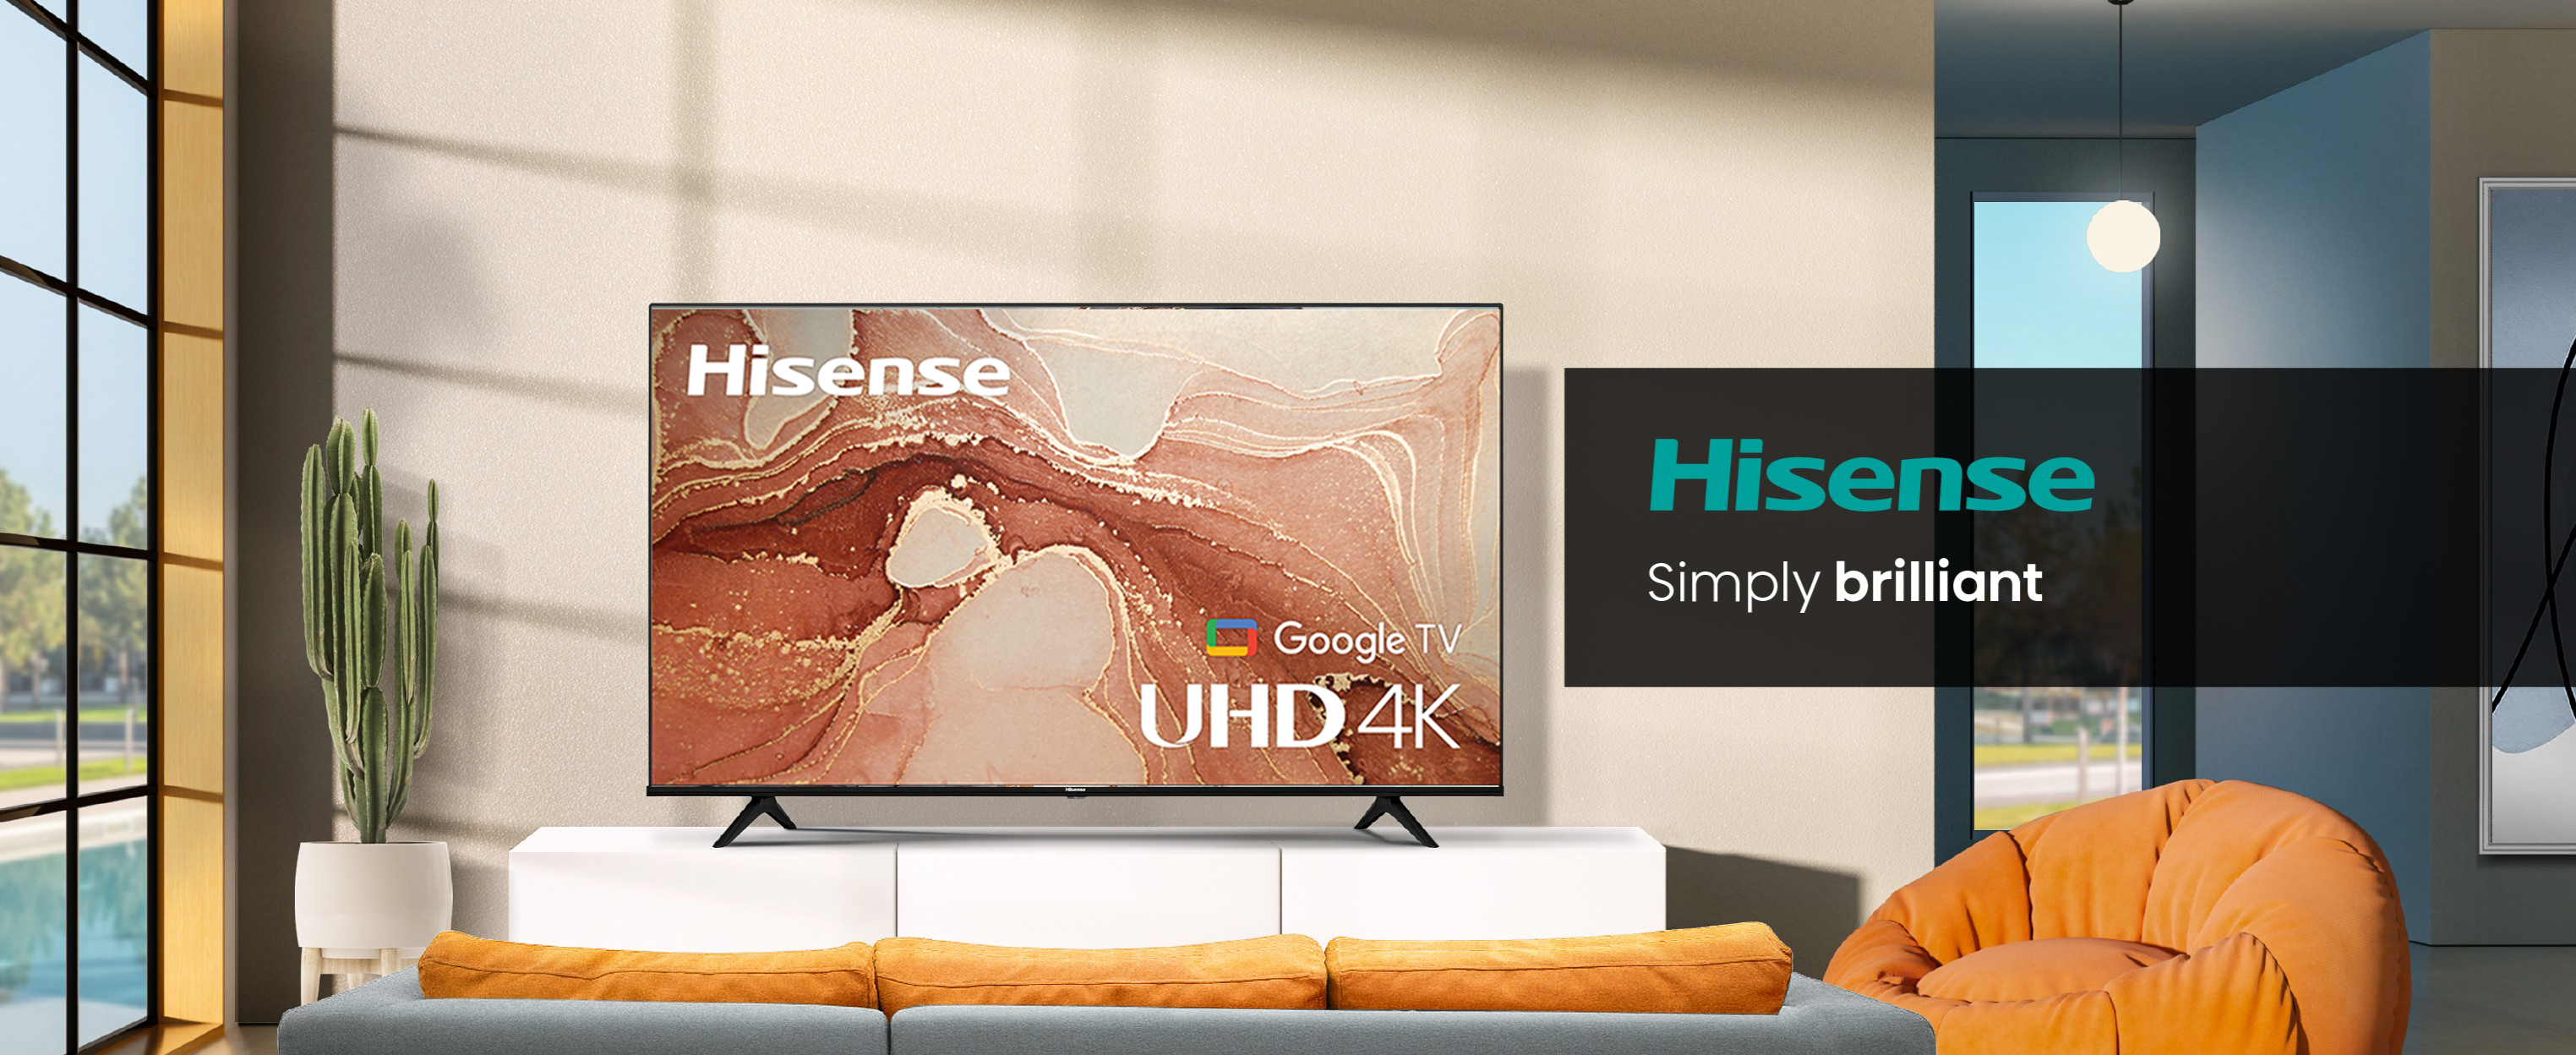 Hisense L5G 100" 4k Laser TV